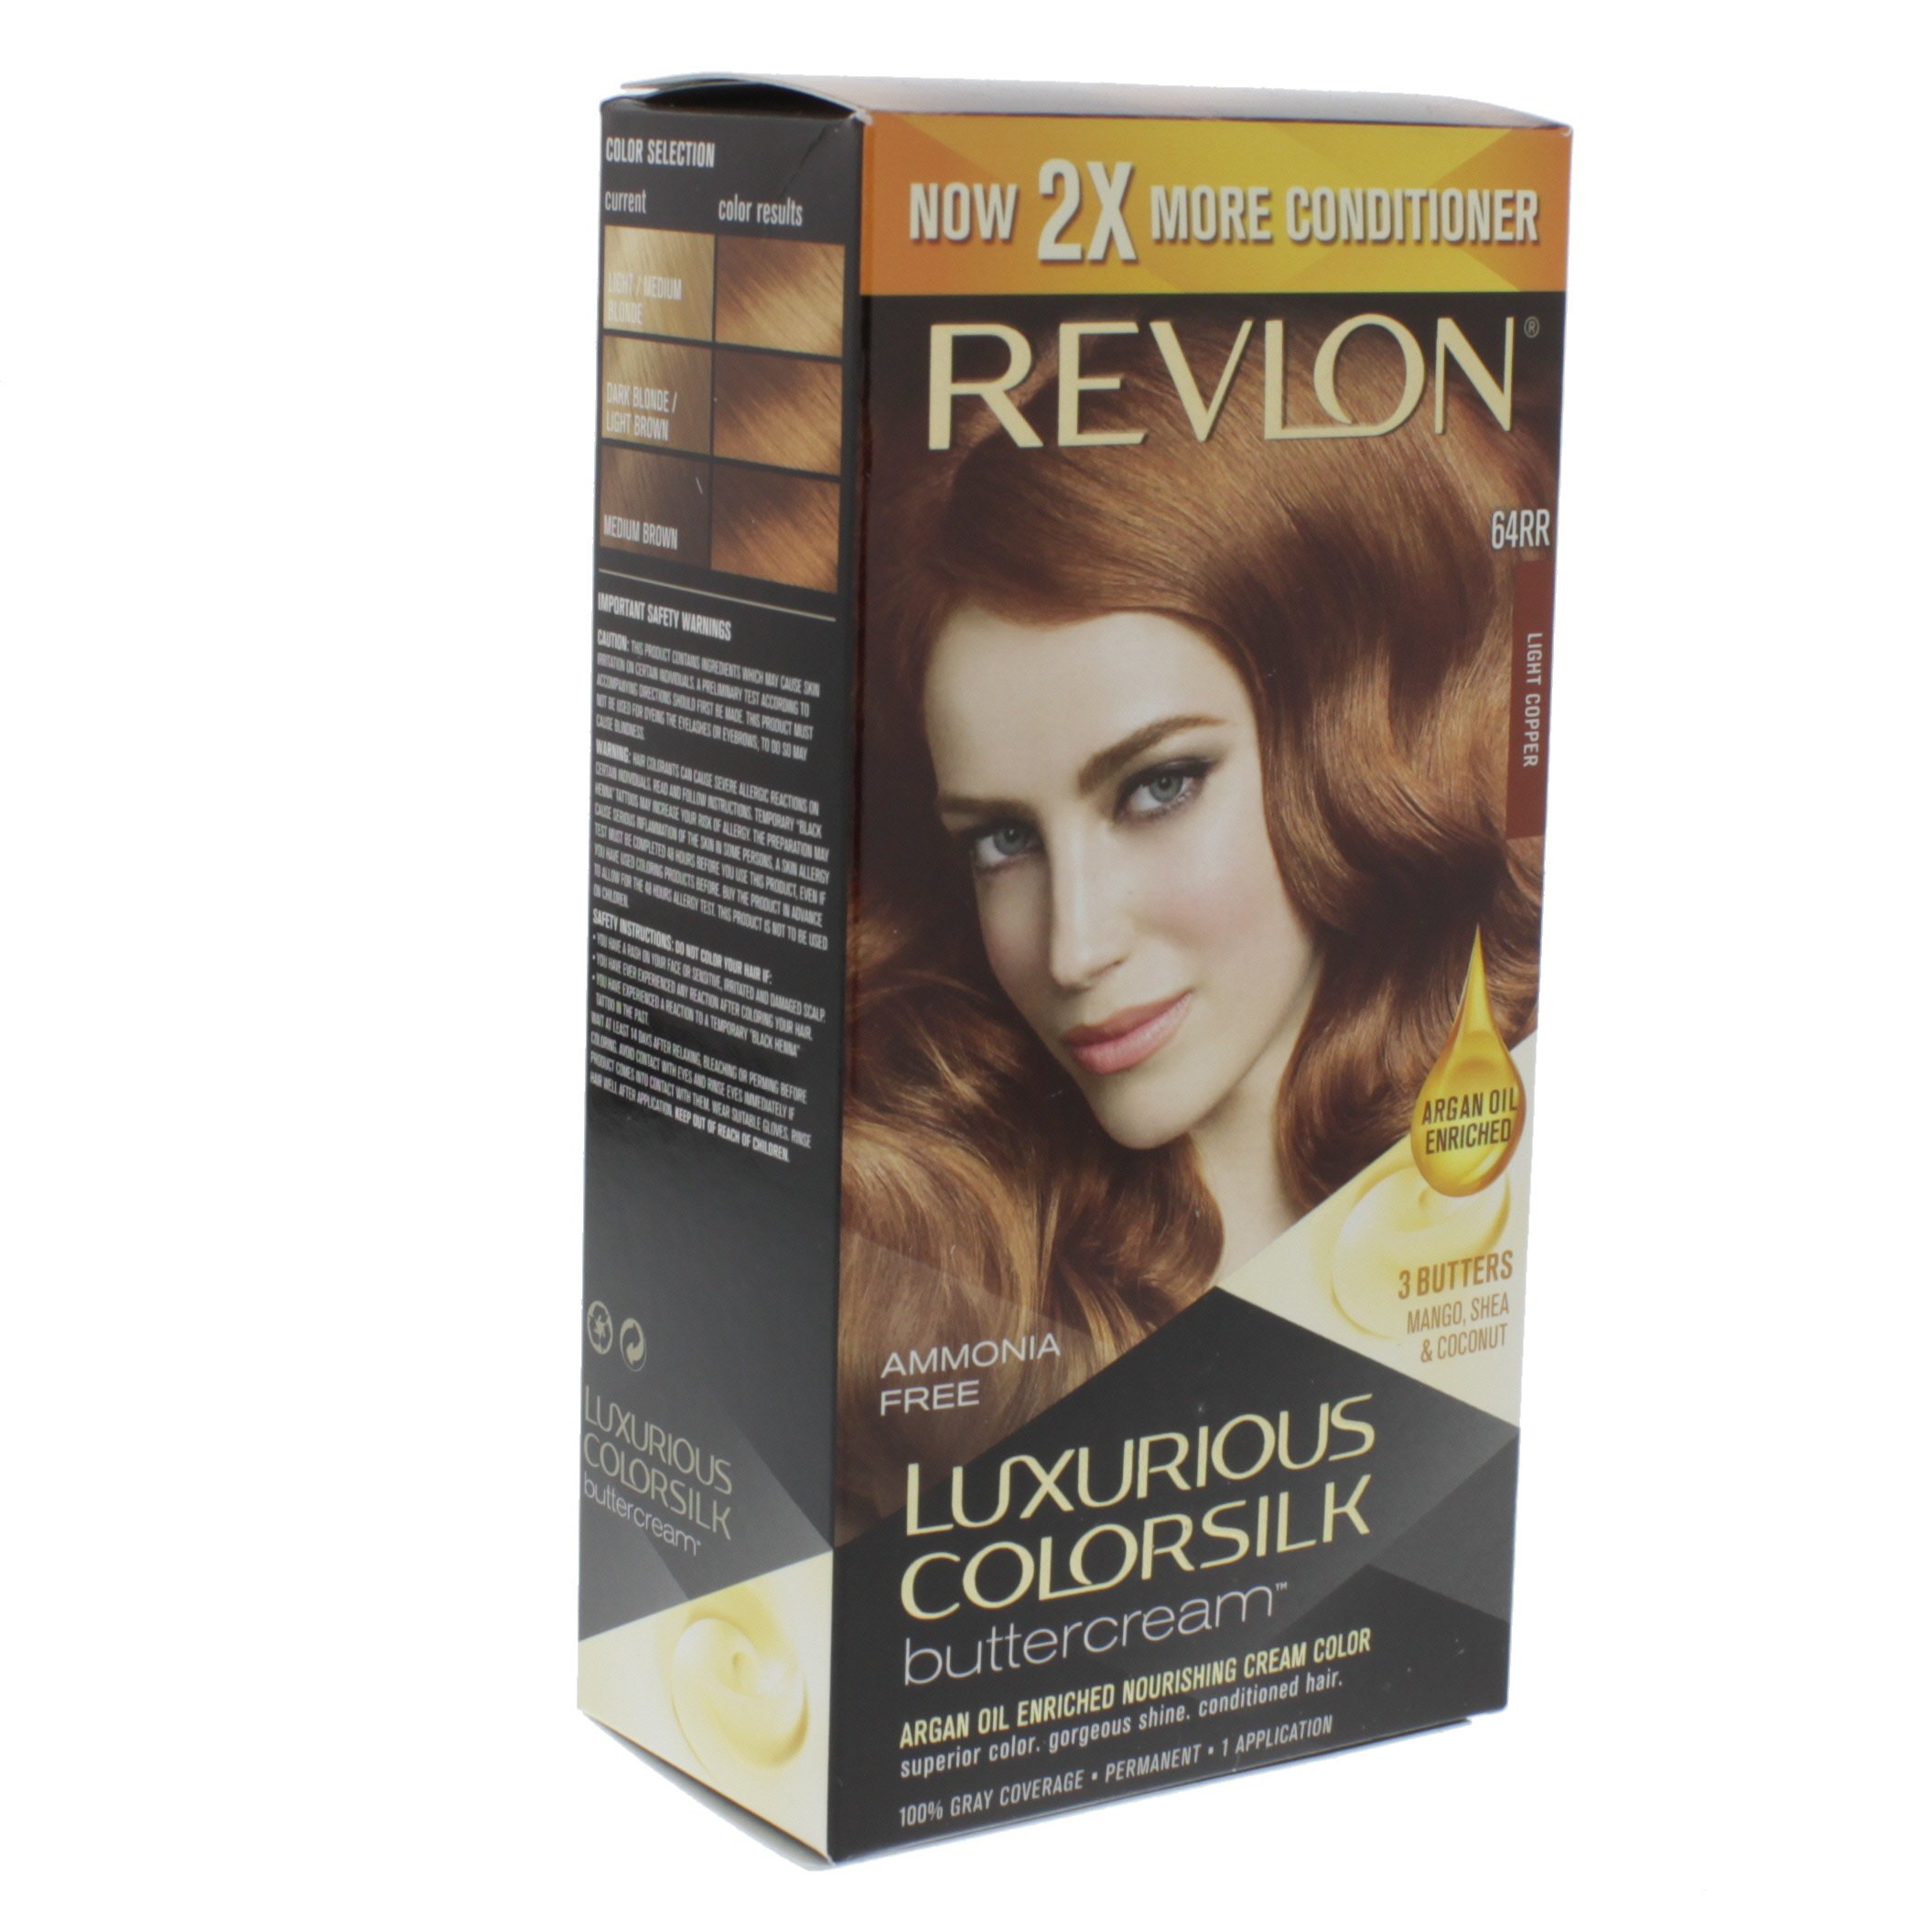 Revlon Luxurious Buttercream Color, Copper - at H-E-B